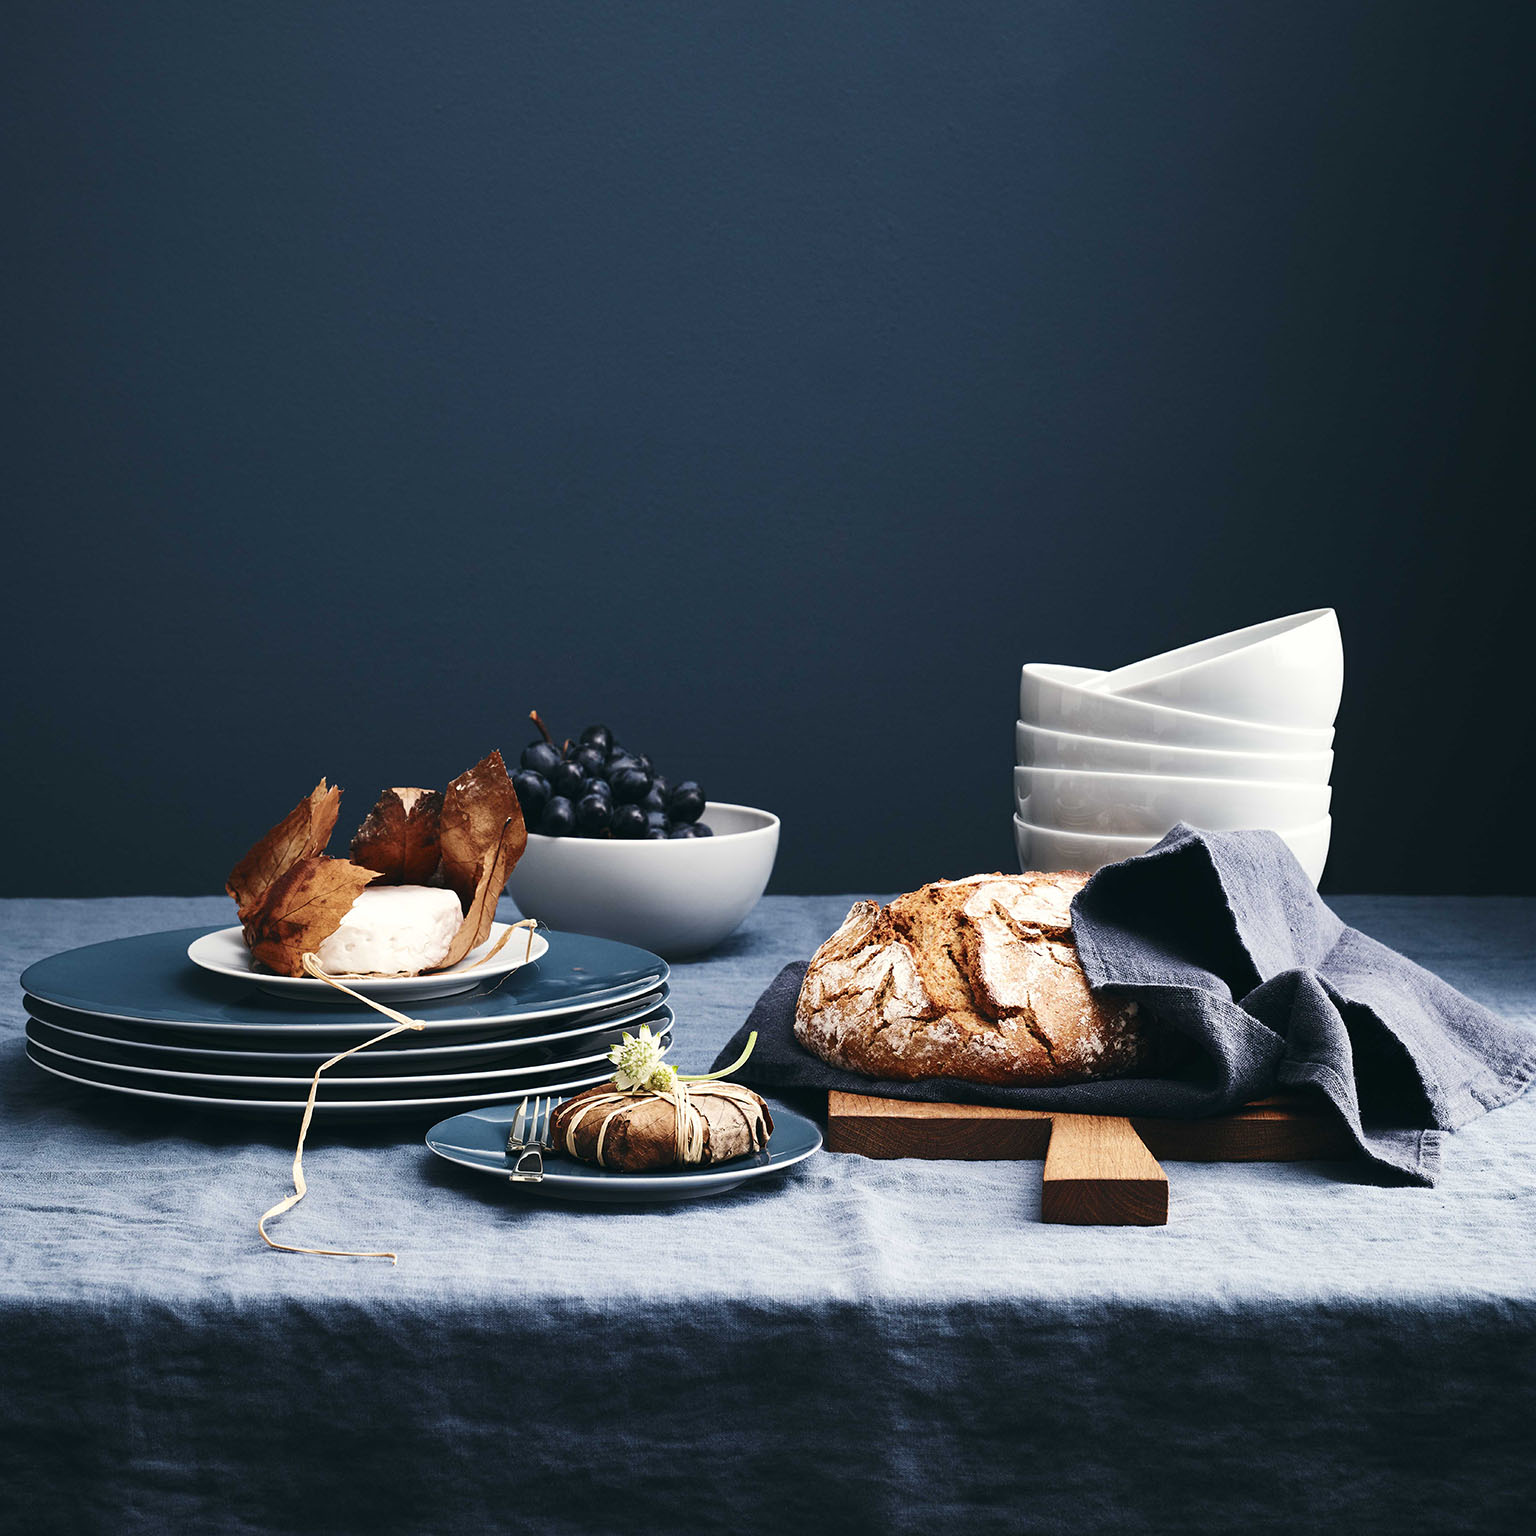 Tisch mit dunkelblauer Leinentischdecke vor dunkelblauem Hintergrund mit Comfort Blue Tellern von TAC Sensual, Weintrauben, Brot und einem Stapel von Schüsseln in TAC Weiss.